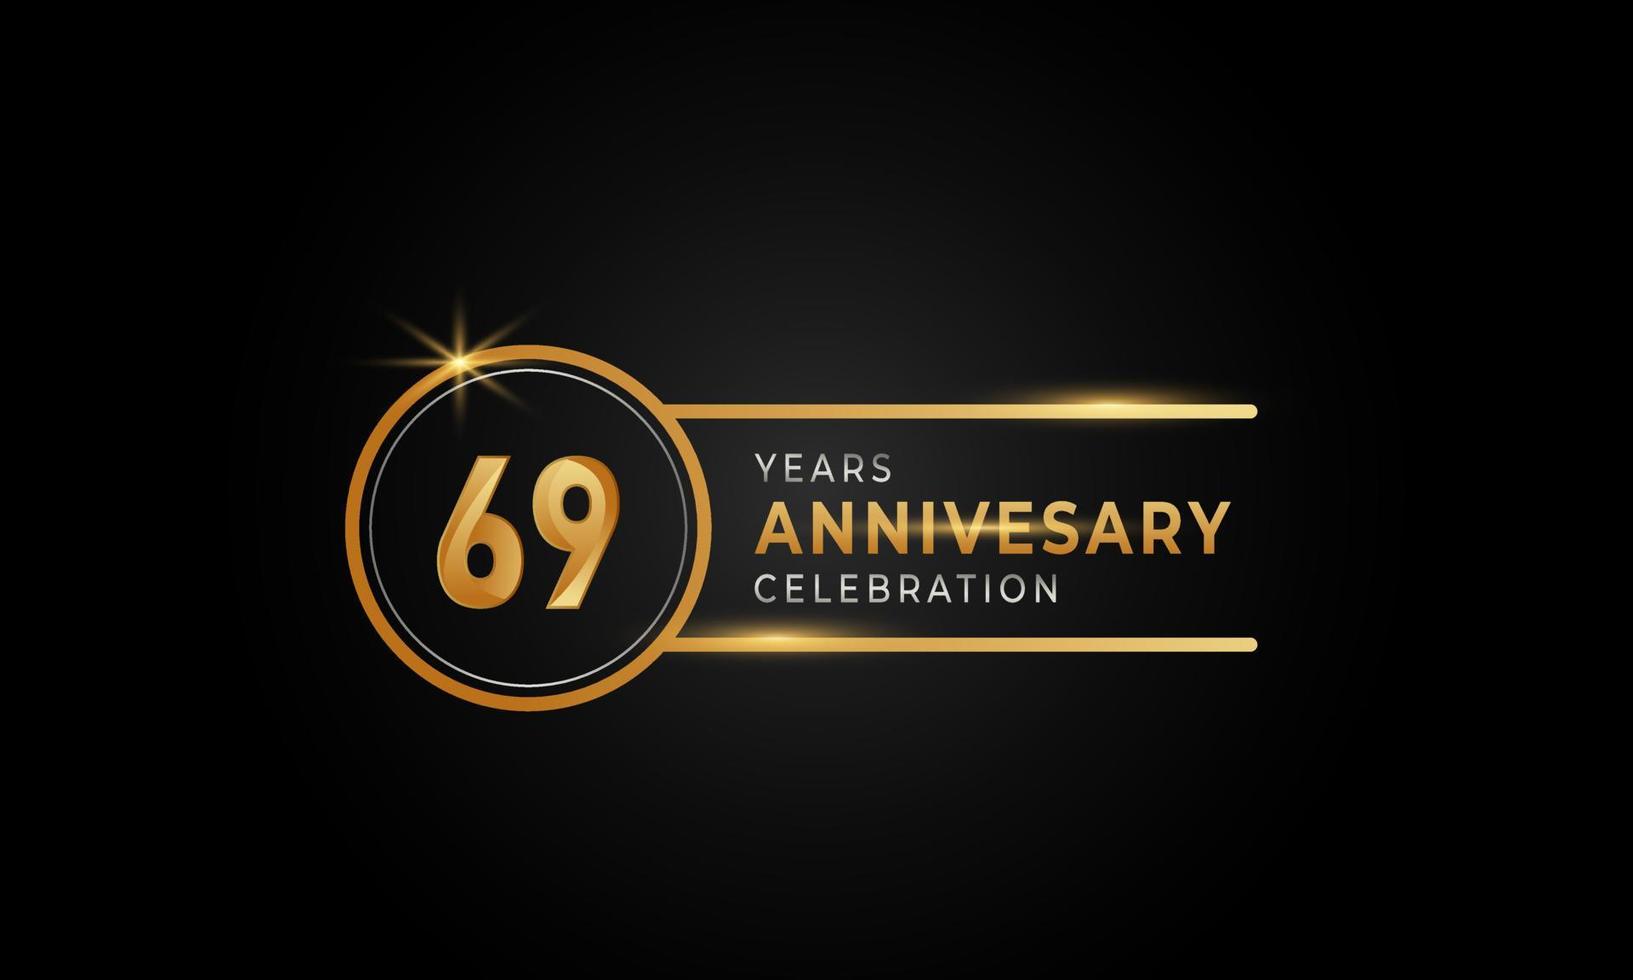 Celebración del aniversario de 69 años color dorado y plateado con anillo circular para evento de celebración, boda, tarjeta de felicitación e invitación aislada en fondo negro vector